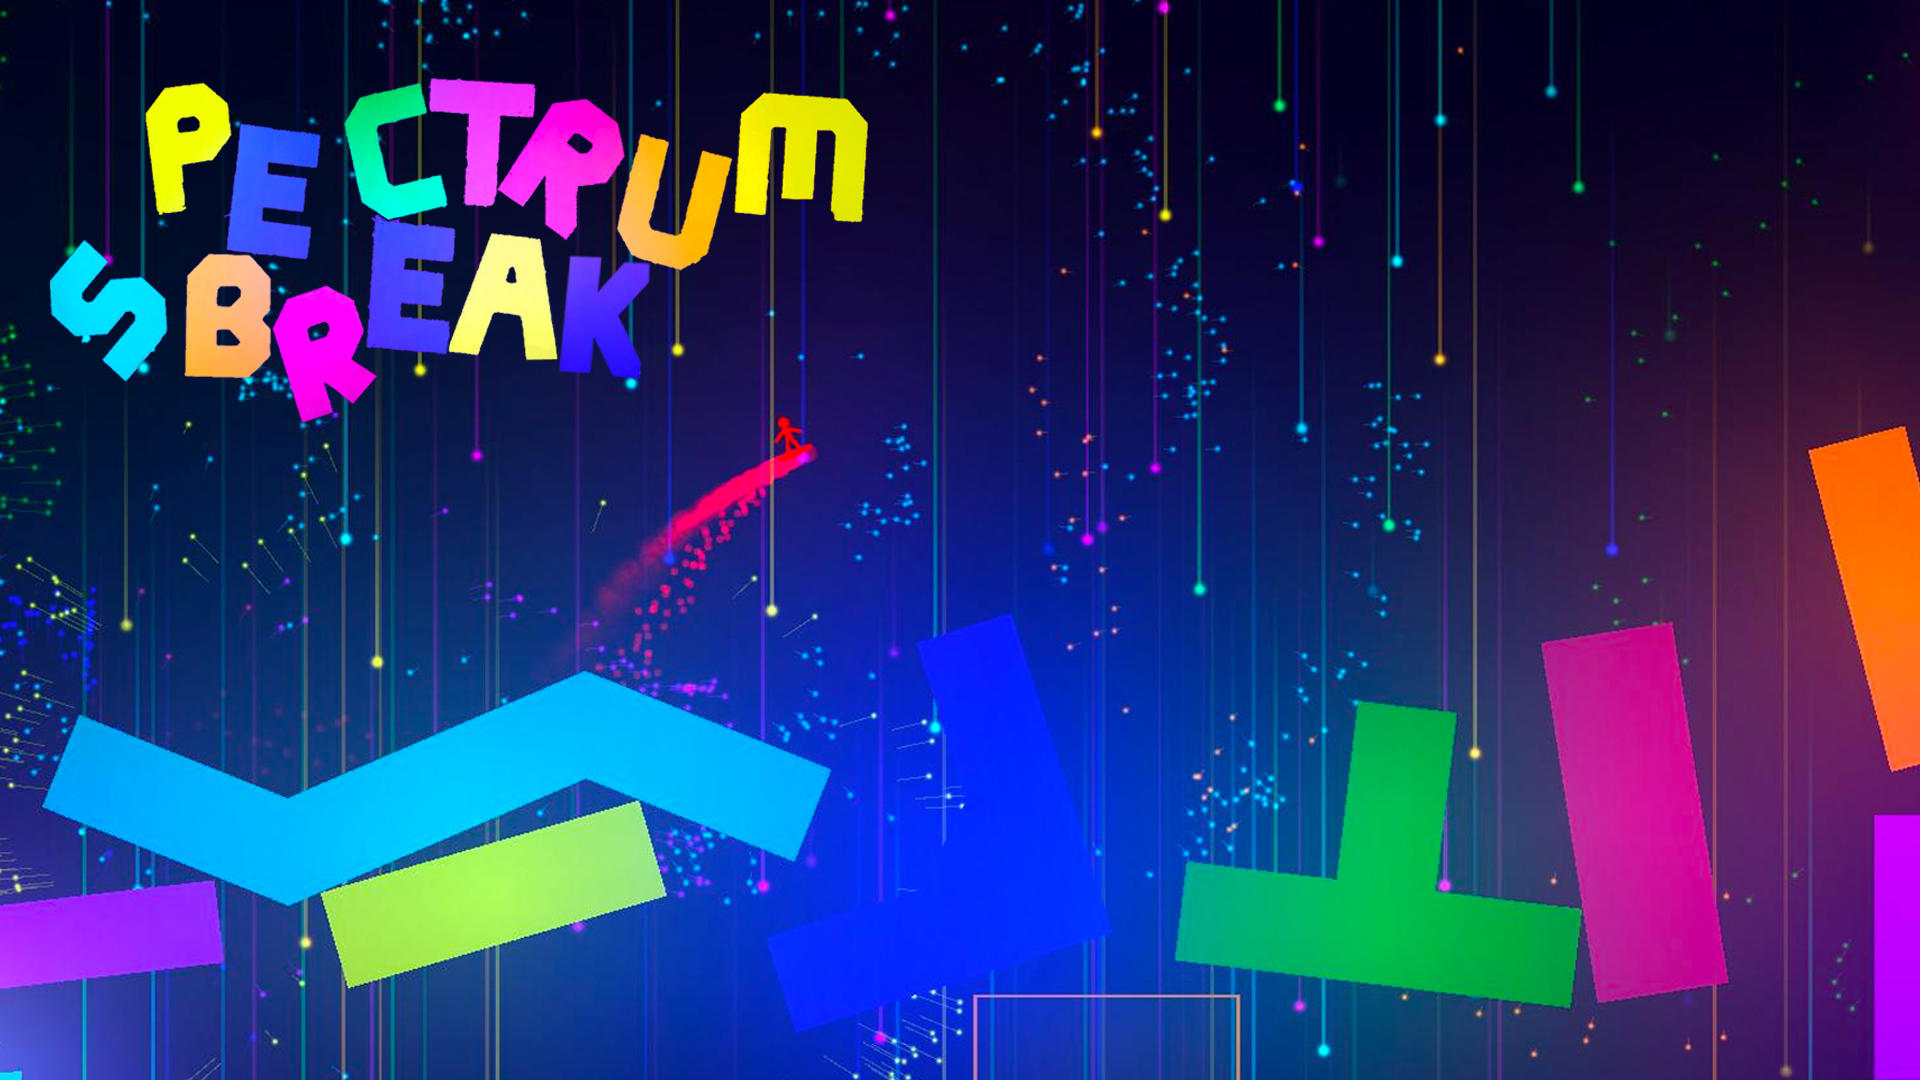 Banner of Spectrum Break 3.7